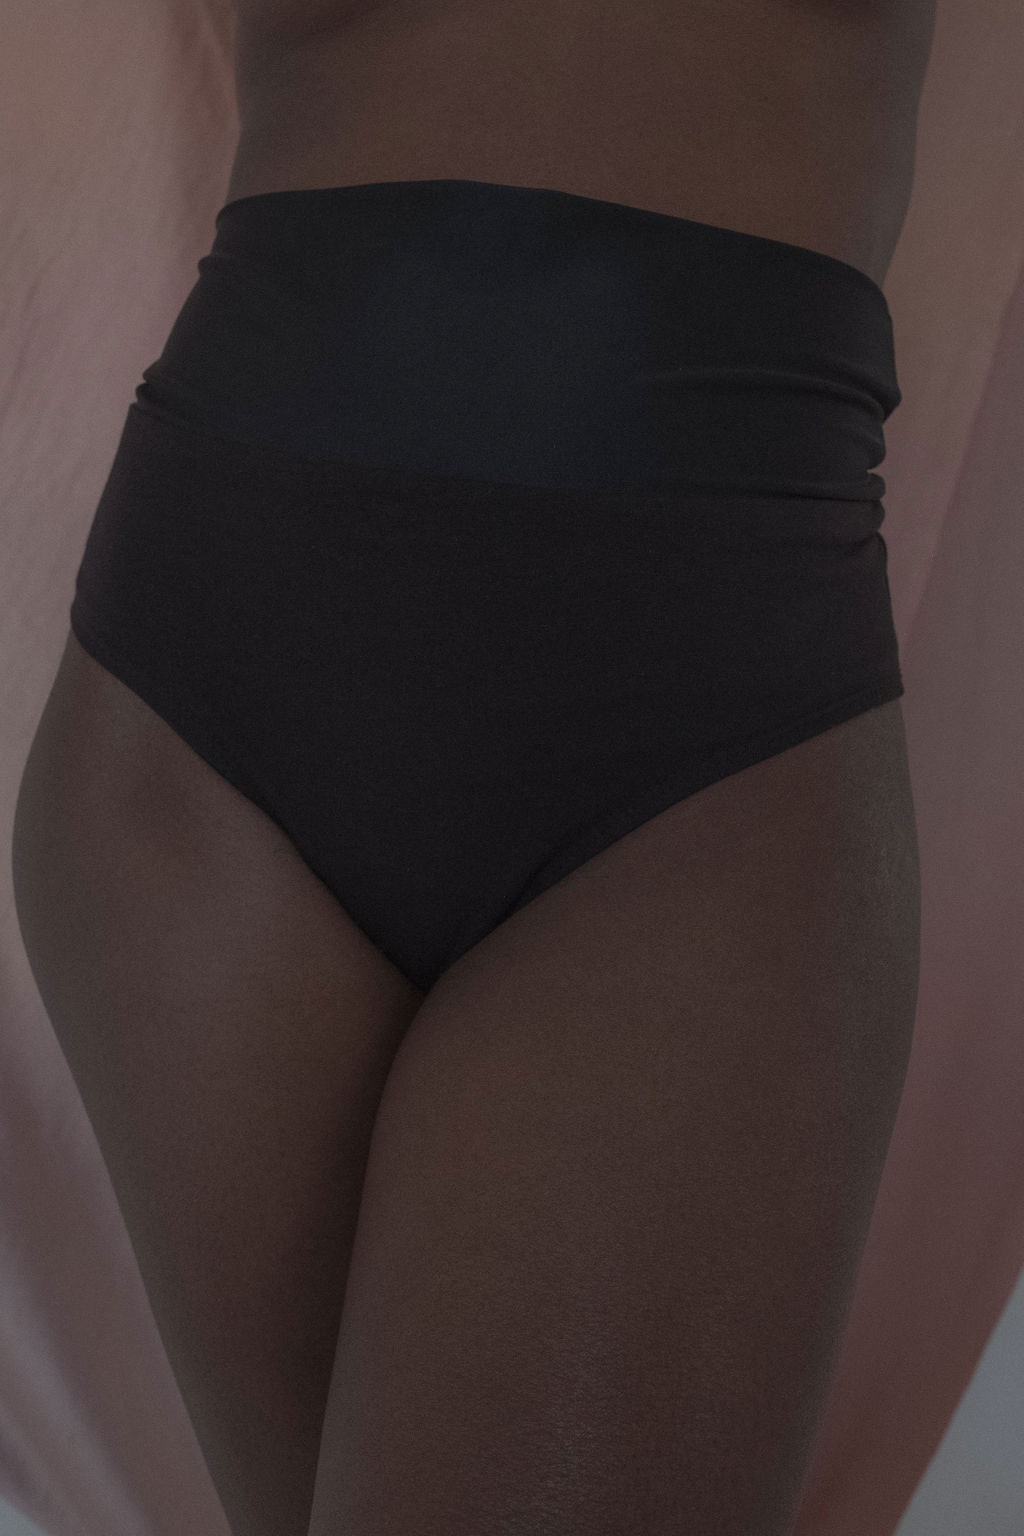 deanna louth share black girl underwear photos